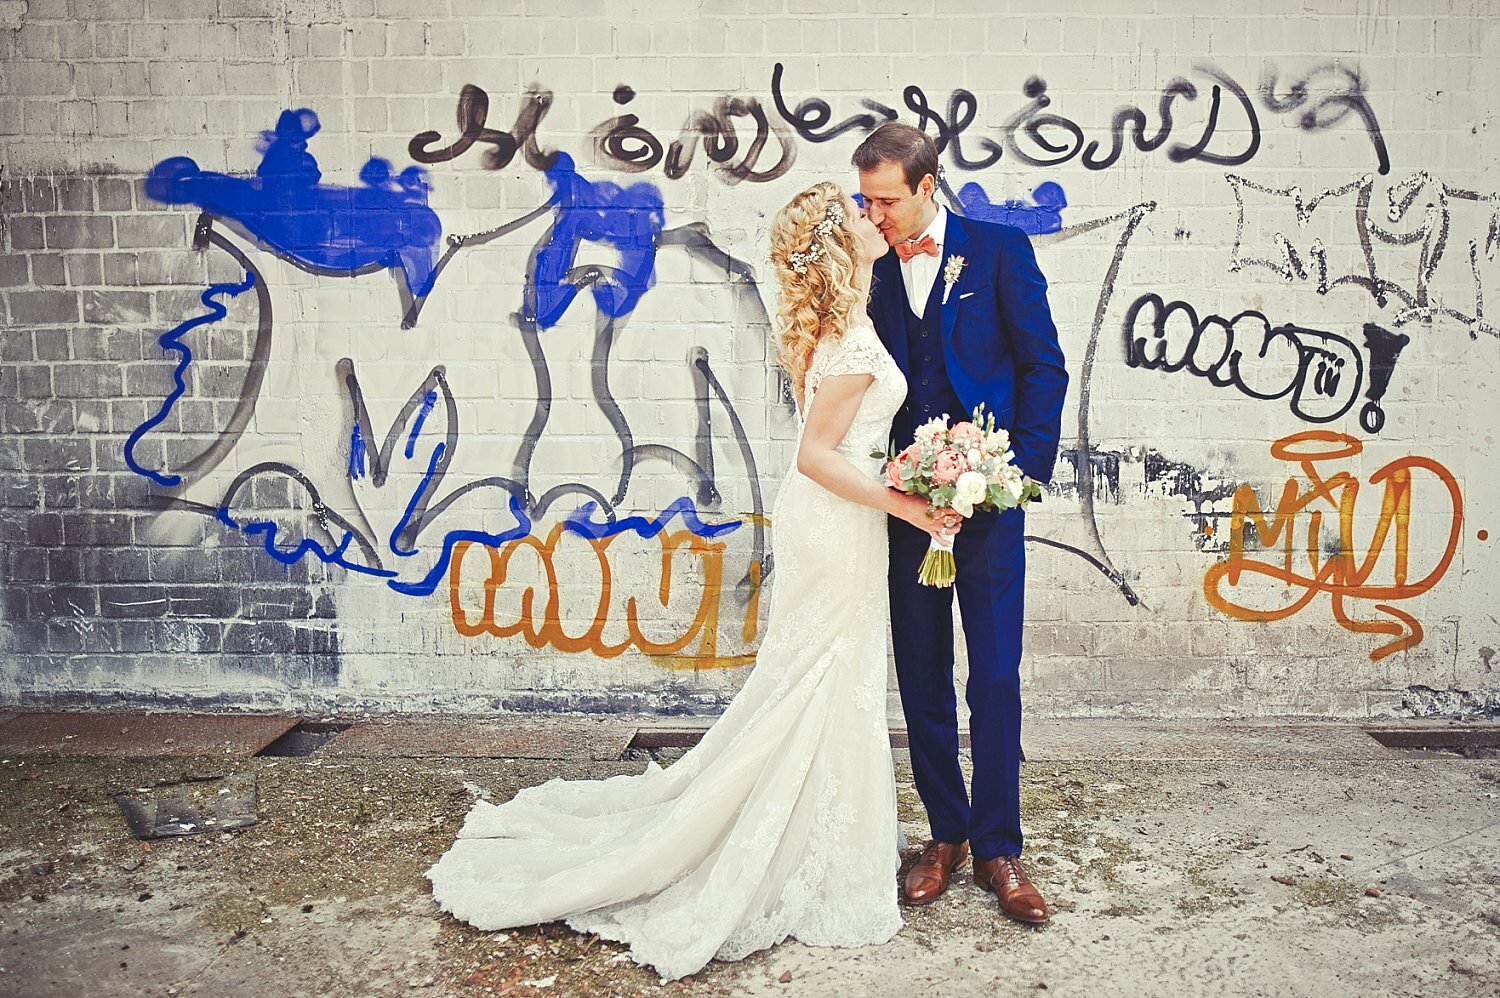 Braut und Bräutigam küssen sich vor einer Wand mit Graffiti